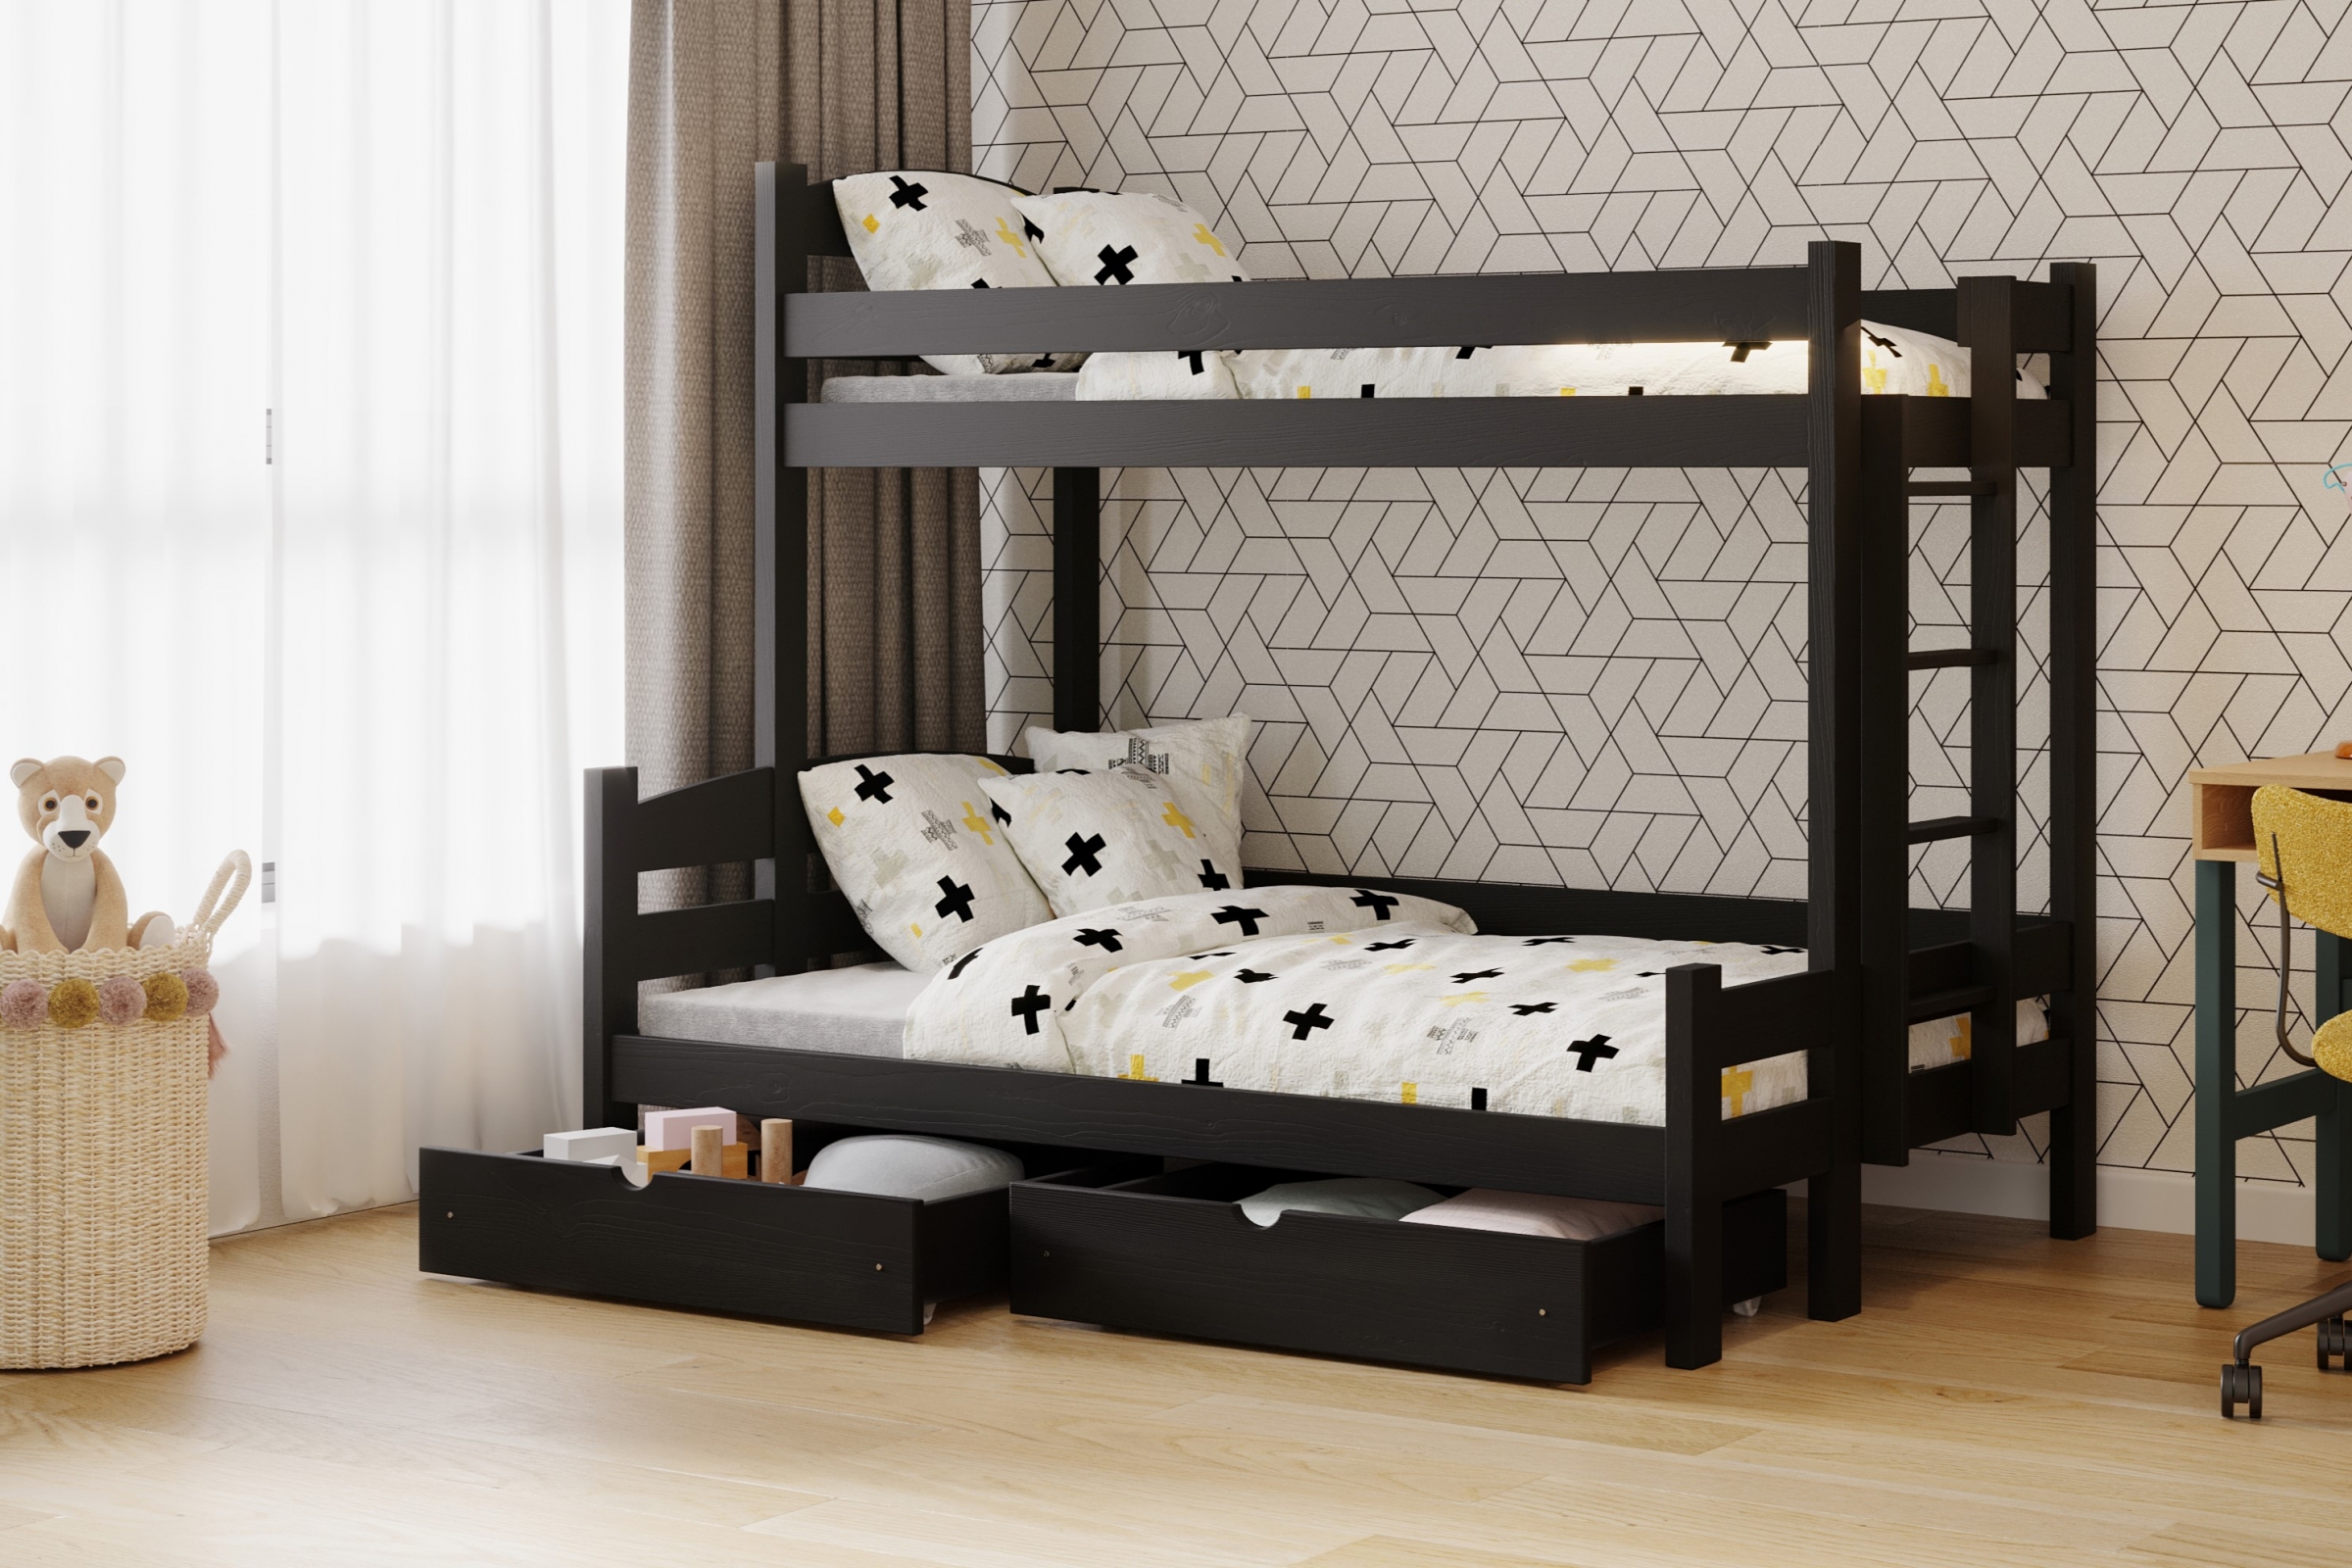 Lovic emeletes ágy, fiókokkal, jobb oldali - 90x200 cm/120x200 cm - fekete Emeletes ágy fiokokkal Lovic - fekete - aranzacja